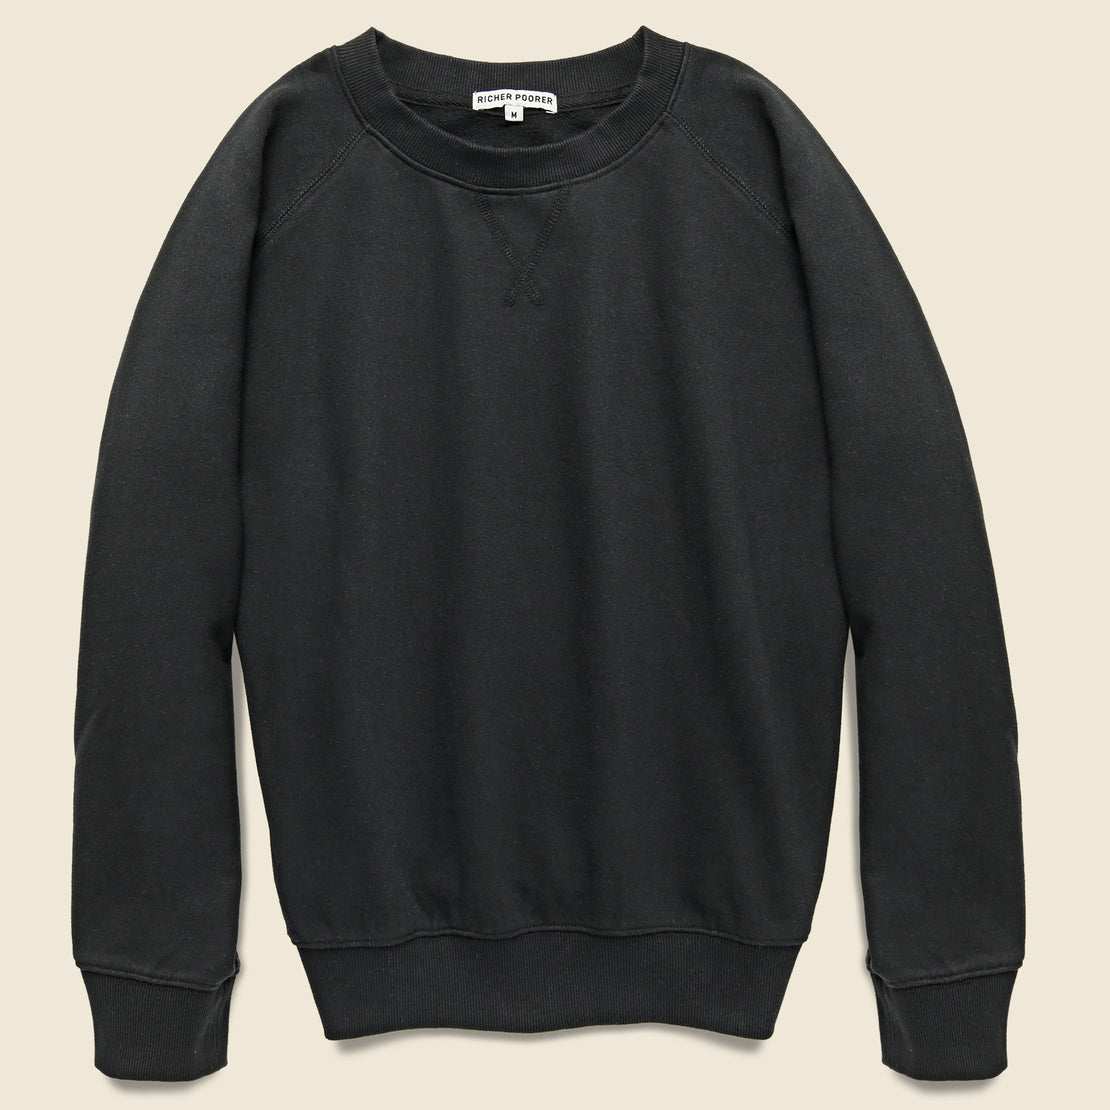 Richer Poorer Crew Sweatshirt - Black